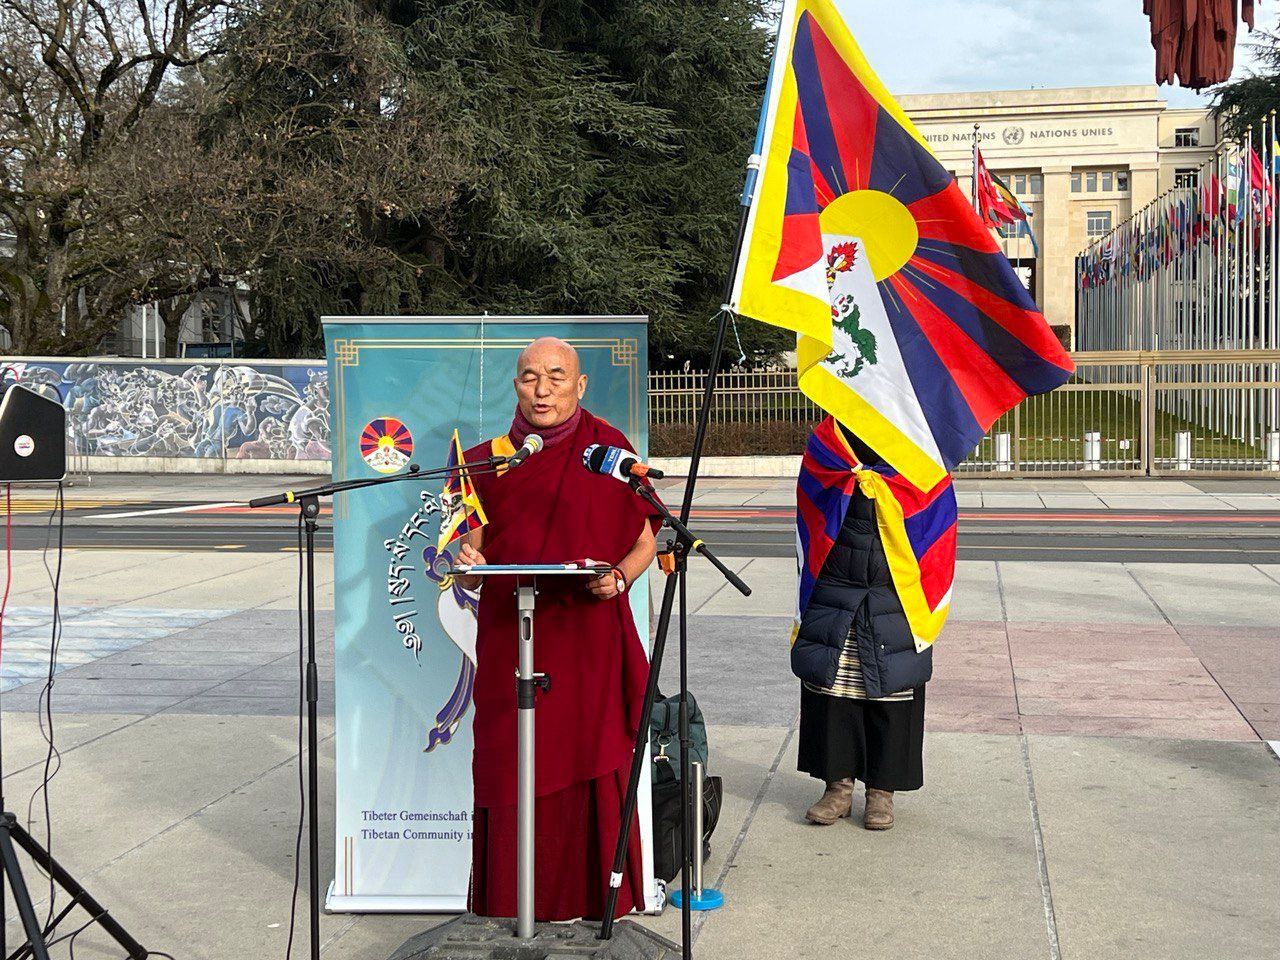 Європейський член тибетського парламенту у вигнанні Вен Тхубтен Вангчен закликав демократичні країни бойкотувати Олімпійські ігри в Пекіні, виступаючи перед демонстрацією в Женеві 04 січня 2022 р. 2 тибетські громади в Швейцарії та Німеччині закликають до дипломатичного бойкоту Олімпійських ігор у Пекіні 2022 р.